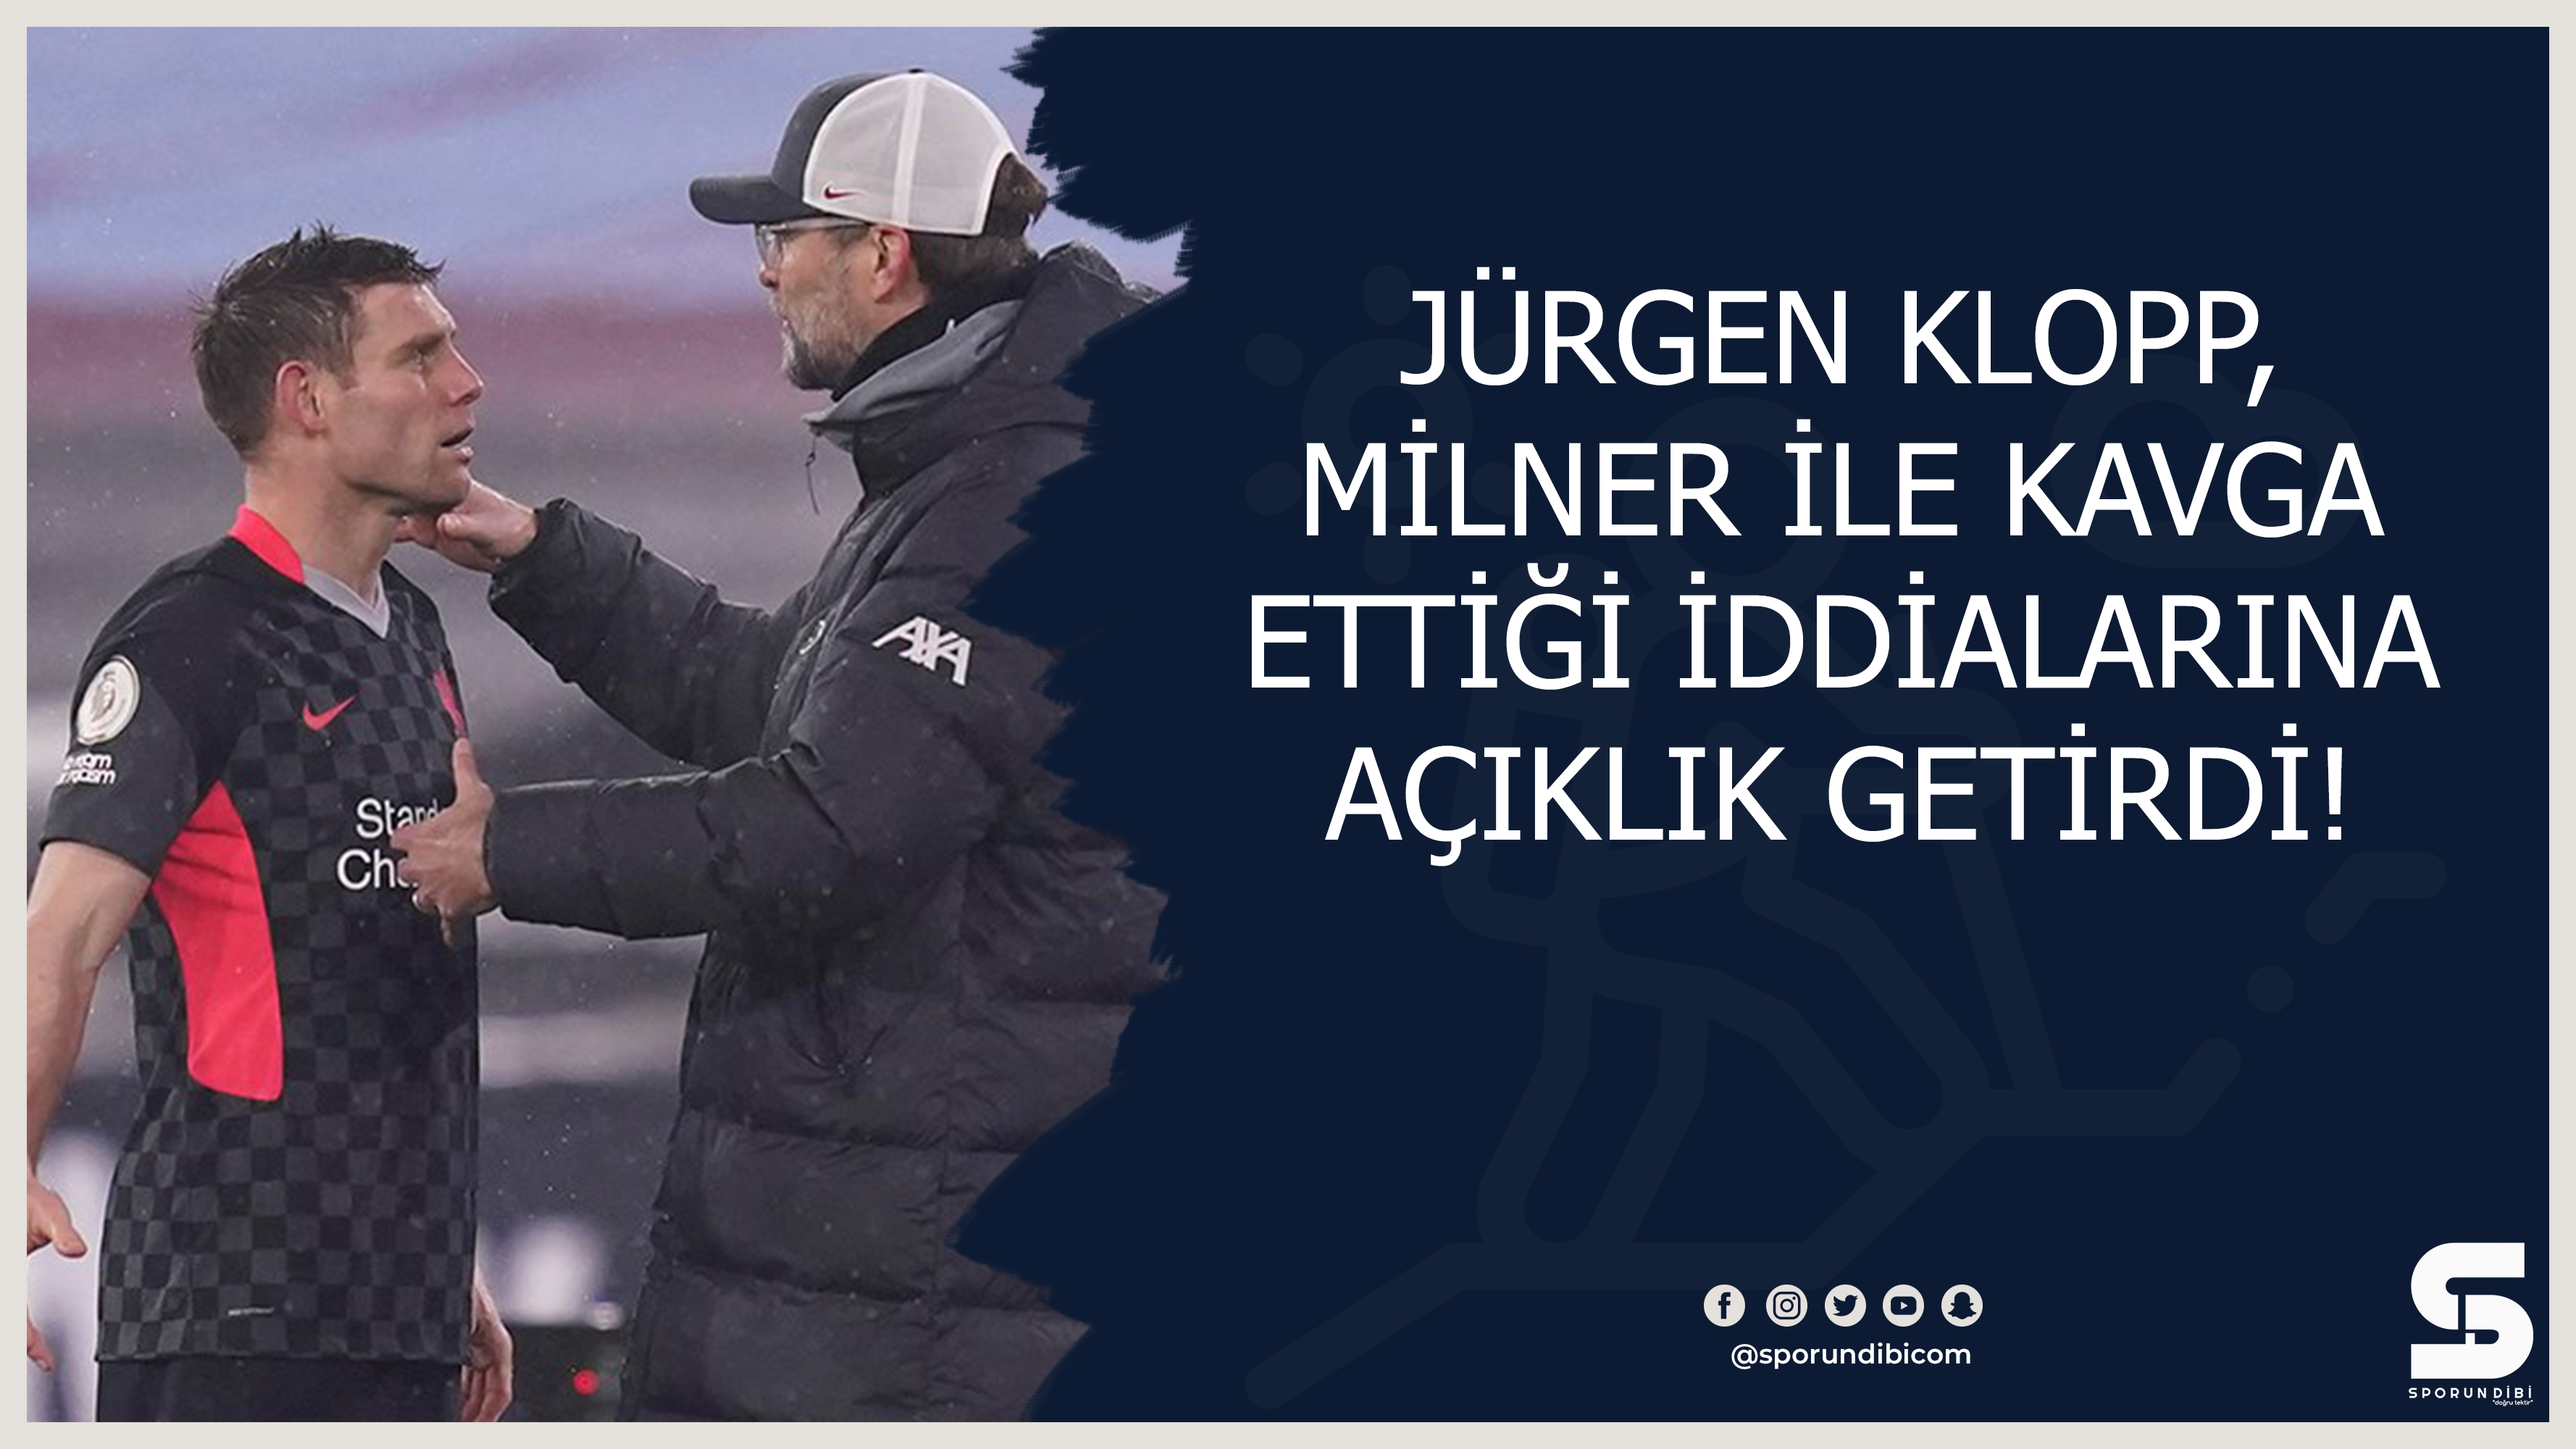 Jürgen Klopp, Milner ile kavga ettiği iddialarına açıklık getirdi!